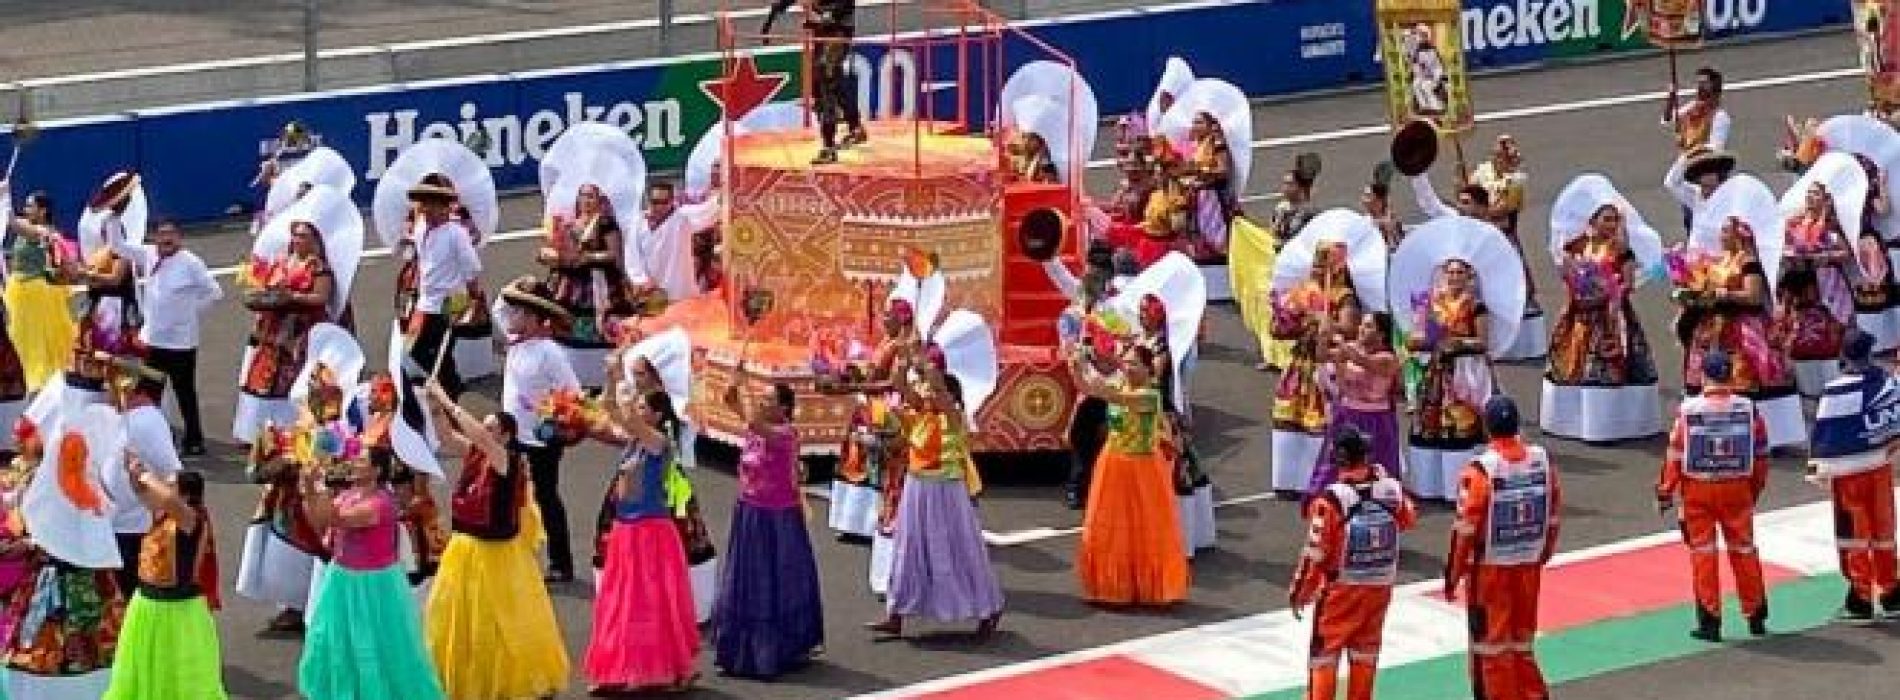 Gobierno de Oaxaca pagó 3MDP para presentación de la Guelaguetza en la F1